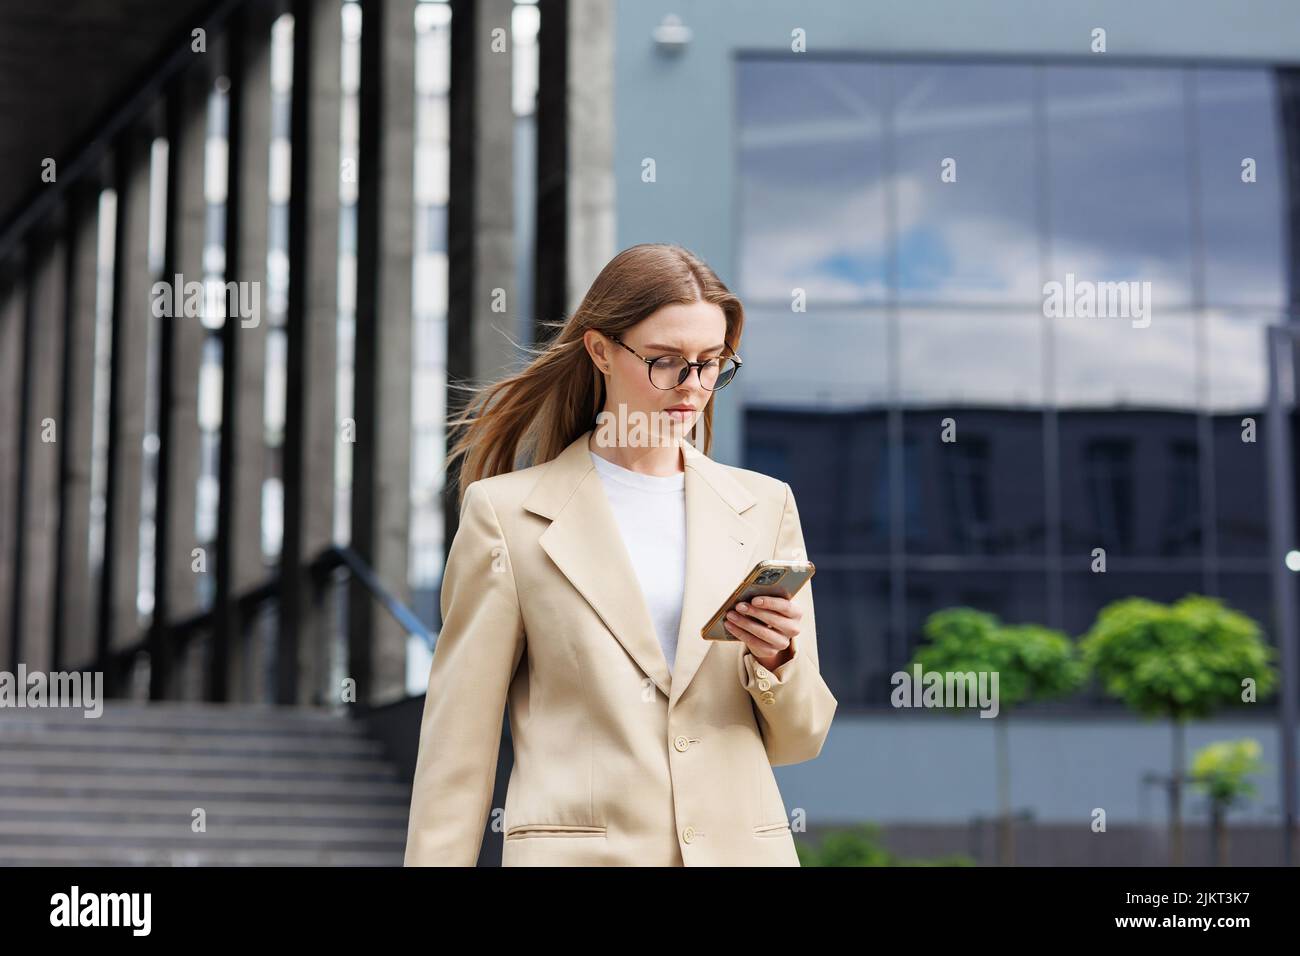 Una joven rubia contra el telón de fondo de un centro de negocios, centro de oficinas. Mientras se desplaza, lee las noticias desde su smartphone. Foto de stock